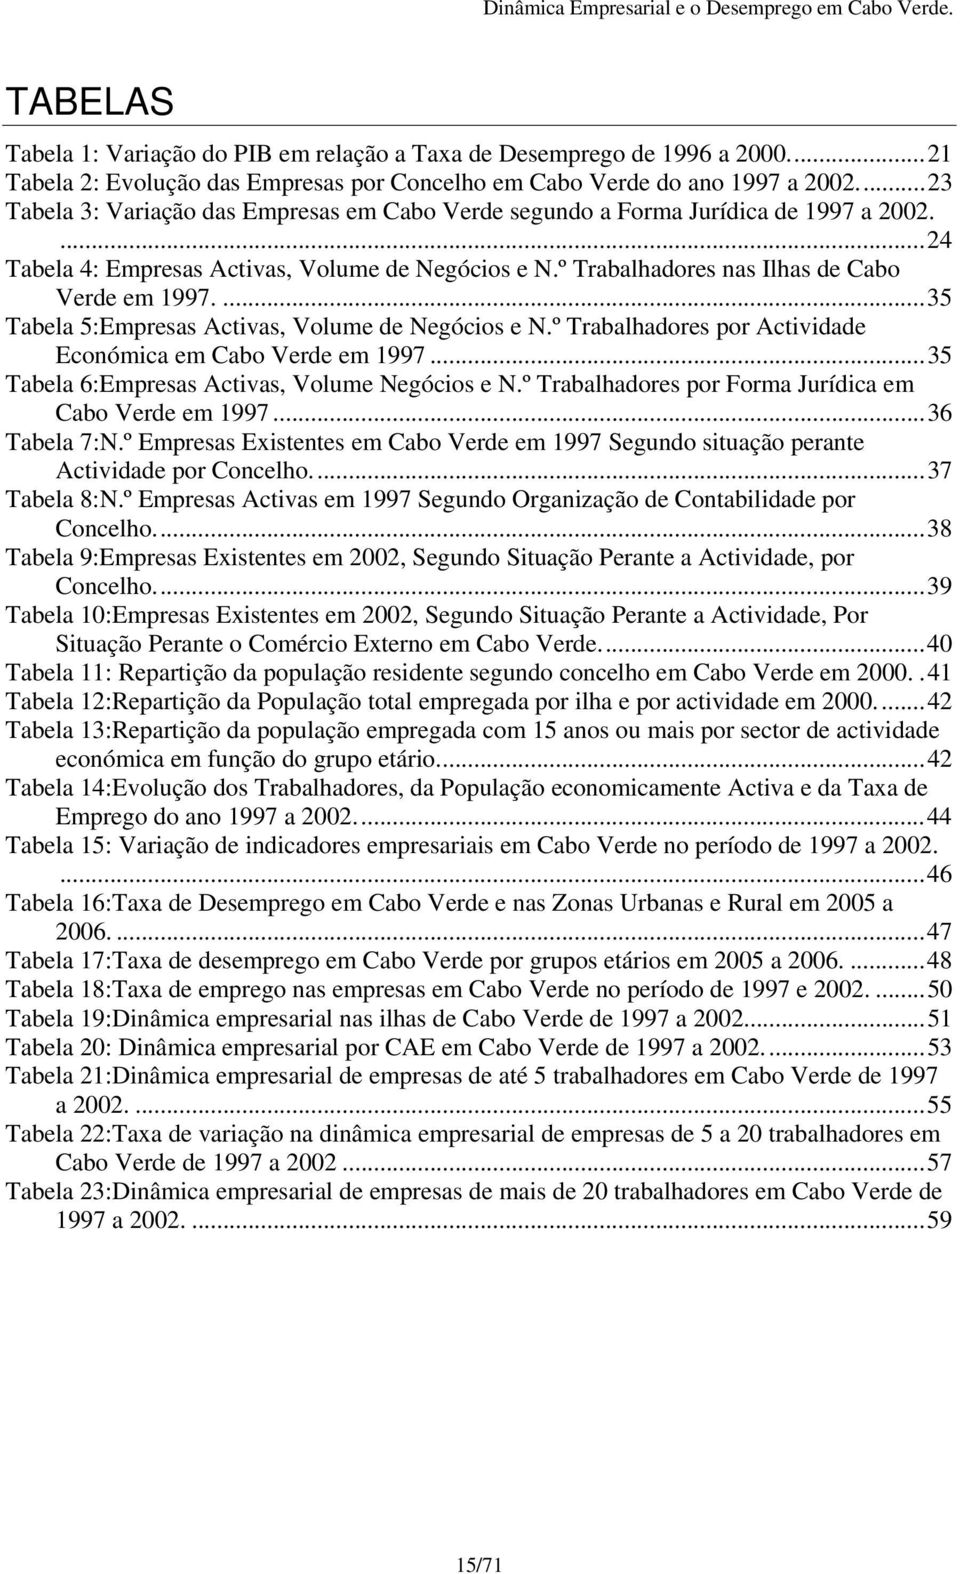 ...35 Tabela 5:Empresas Activas, Volume de Negócios e N.º Trabalhadores por Actividade Económica em Cabo Verde em 1997...35 Tabela 6:Empresas Activas, Volume Negócios e N.